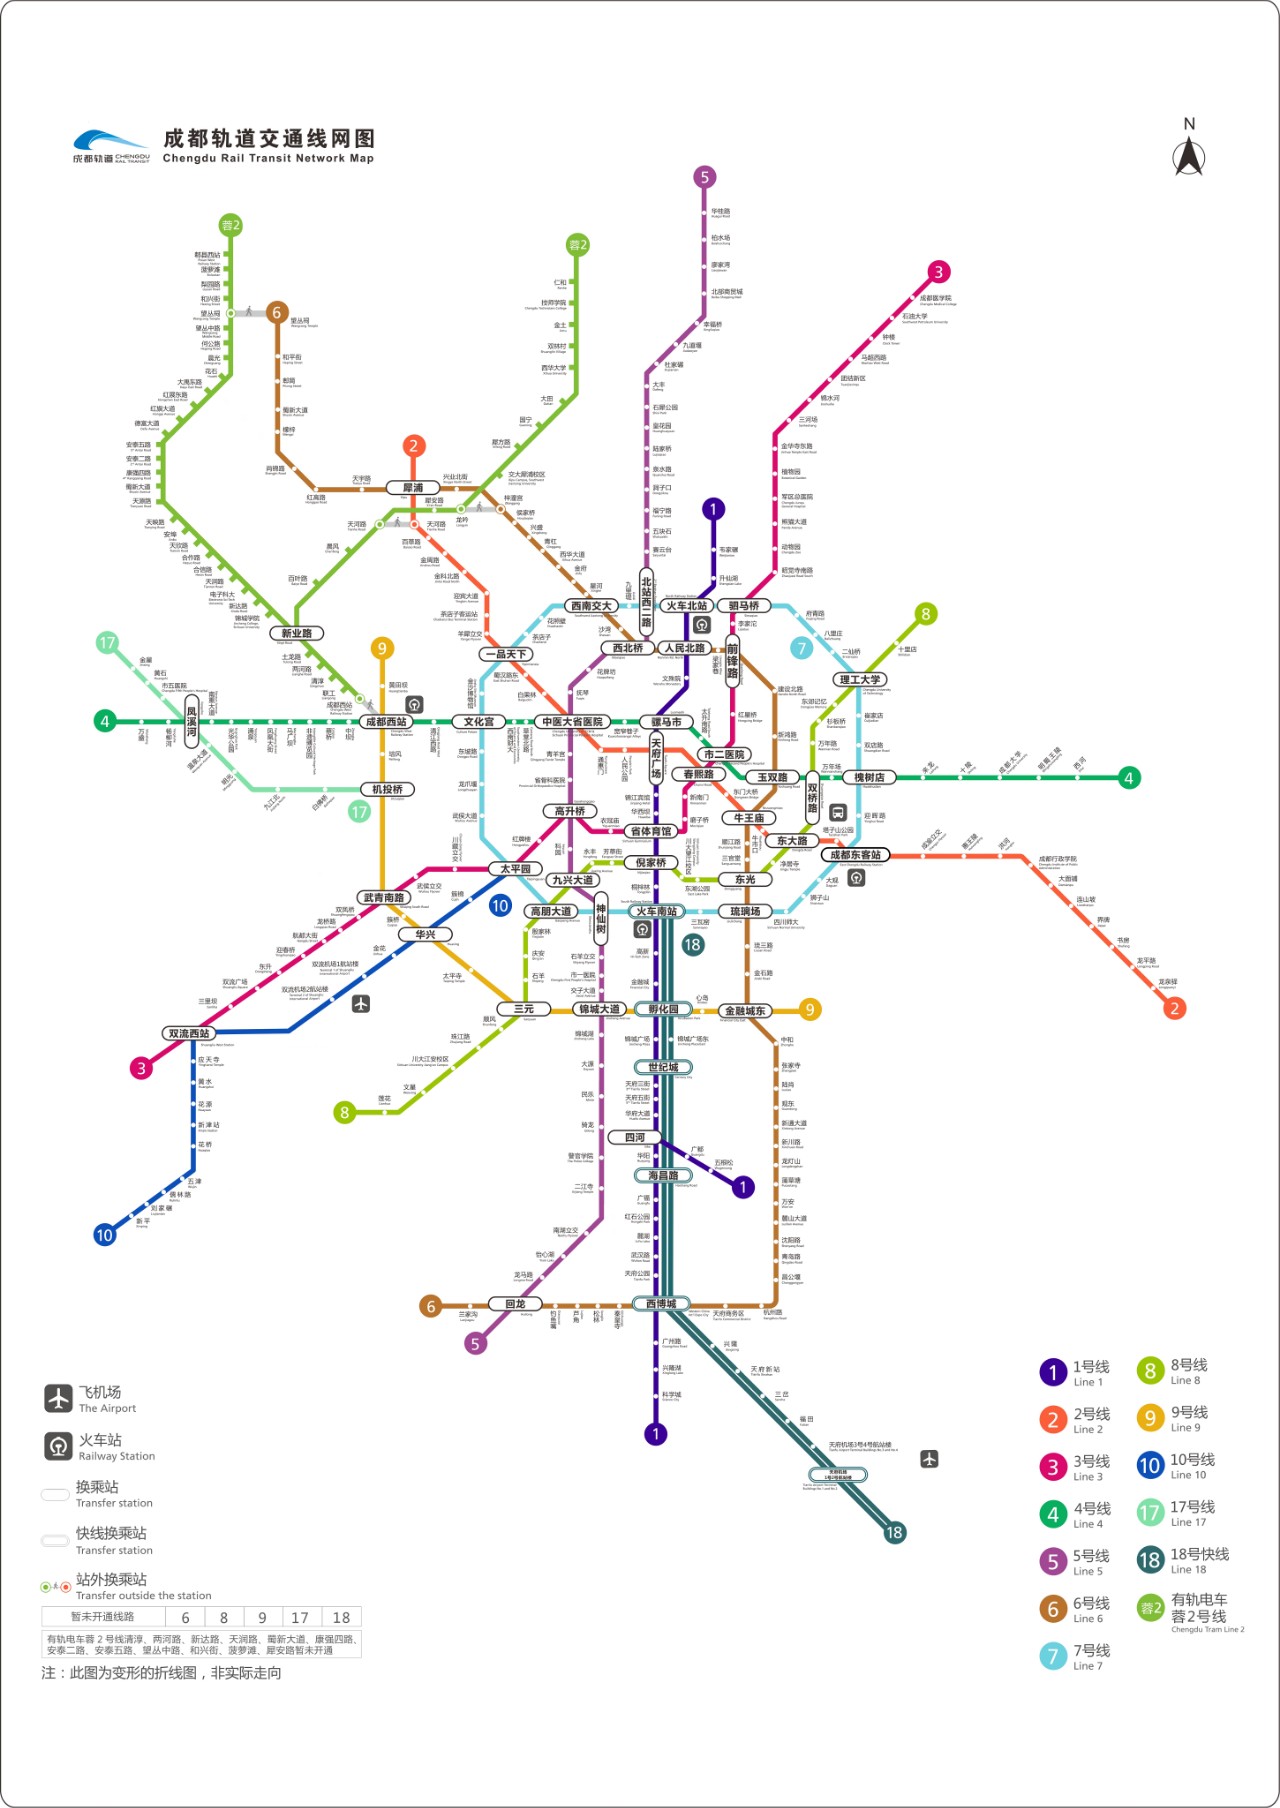 官方最全成都地铁线网图来了打包附赠所有换乘站清单